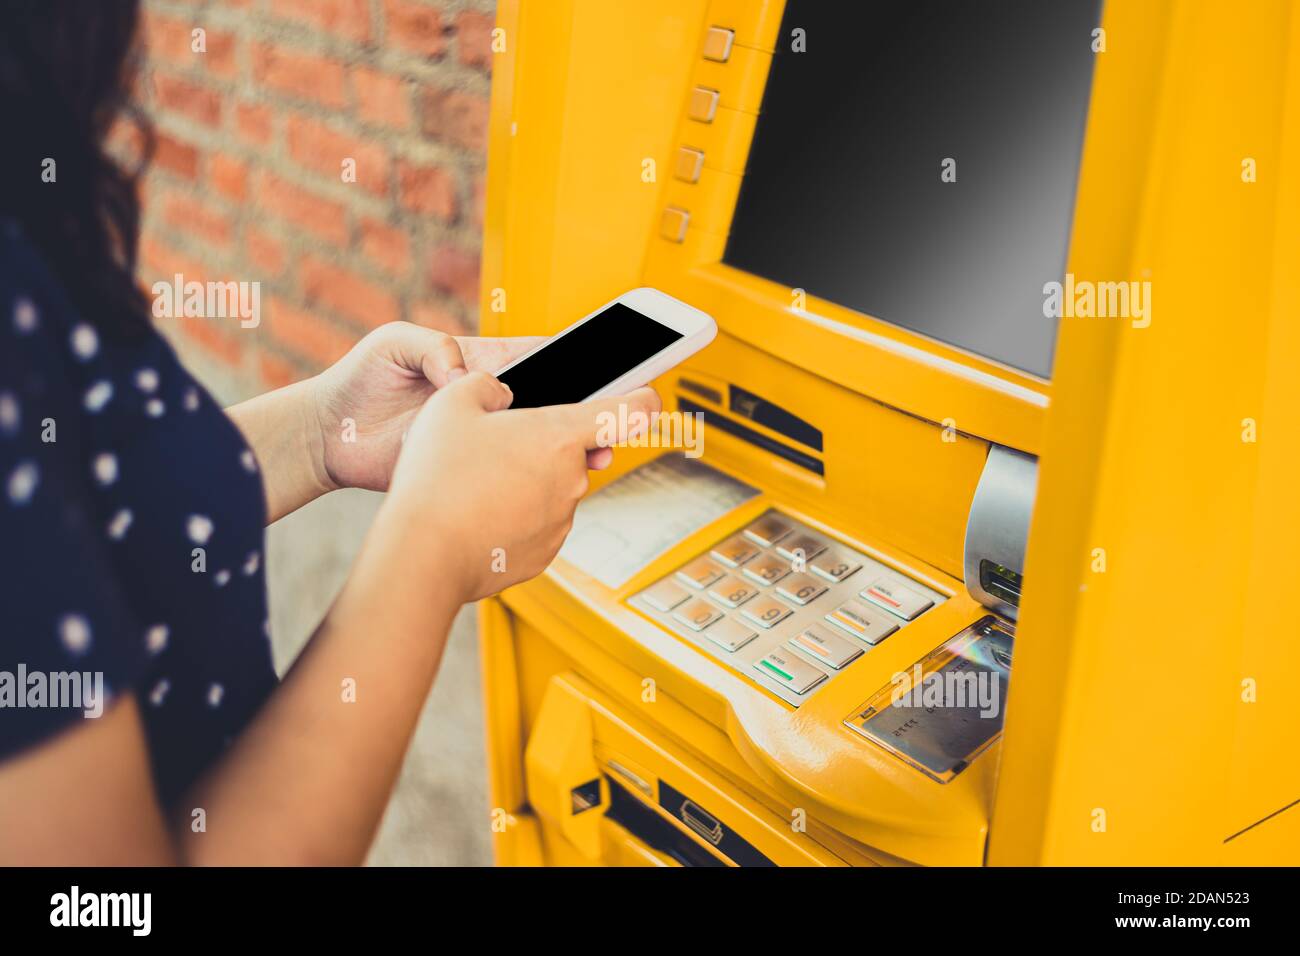 Les personnes utilisant un smartphone mobile pour commander retirent de l'argent par l'intermédiaire de distributeurs automatiques de billets au lieu de la carte d'argent ATM. Banque D'Images